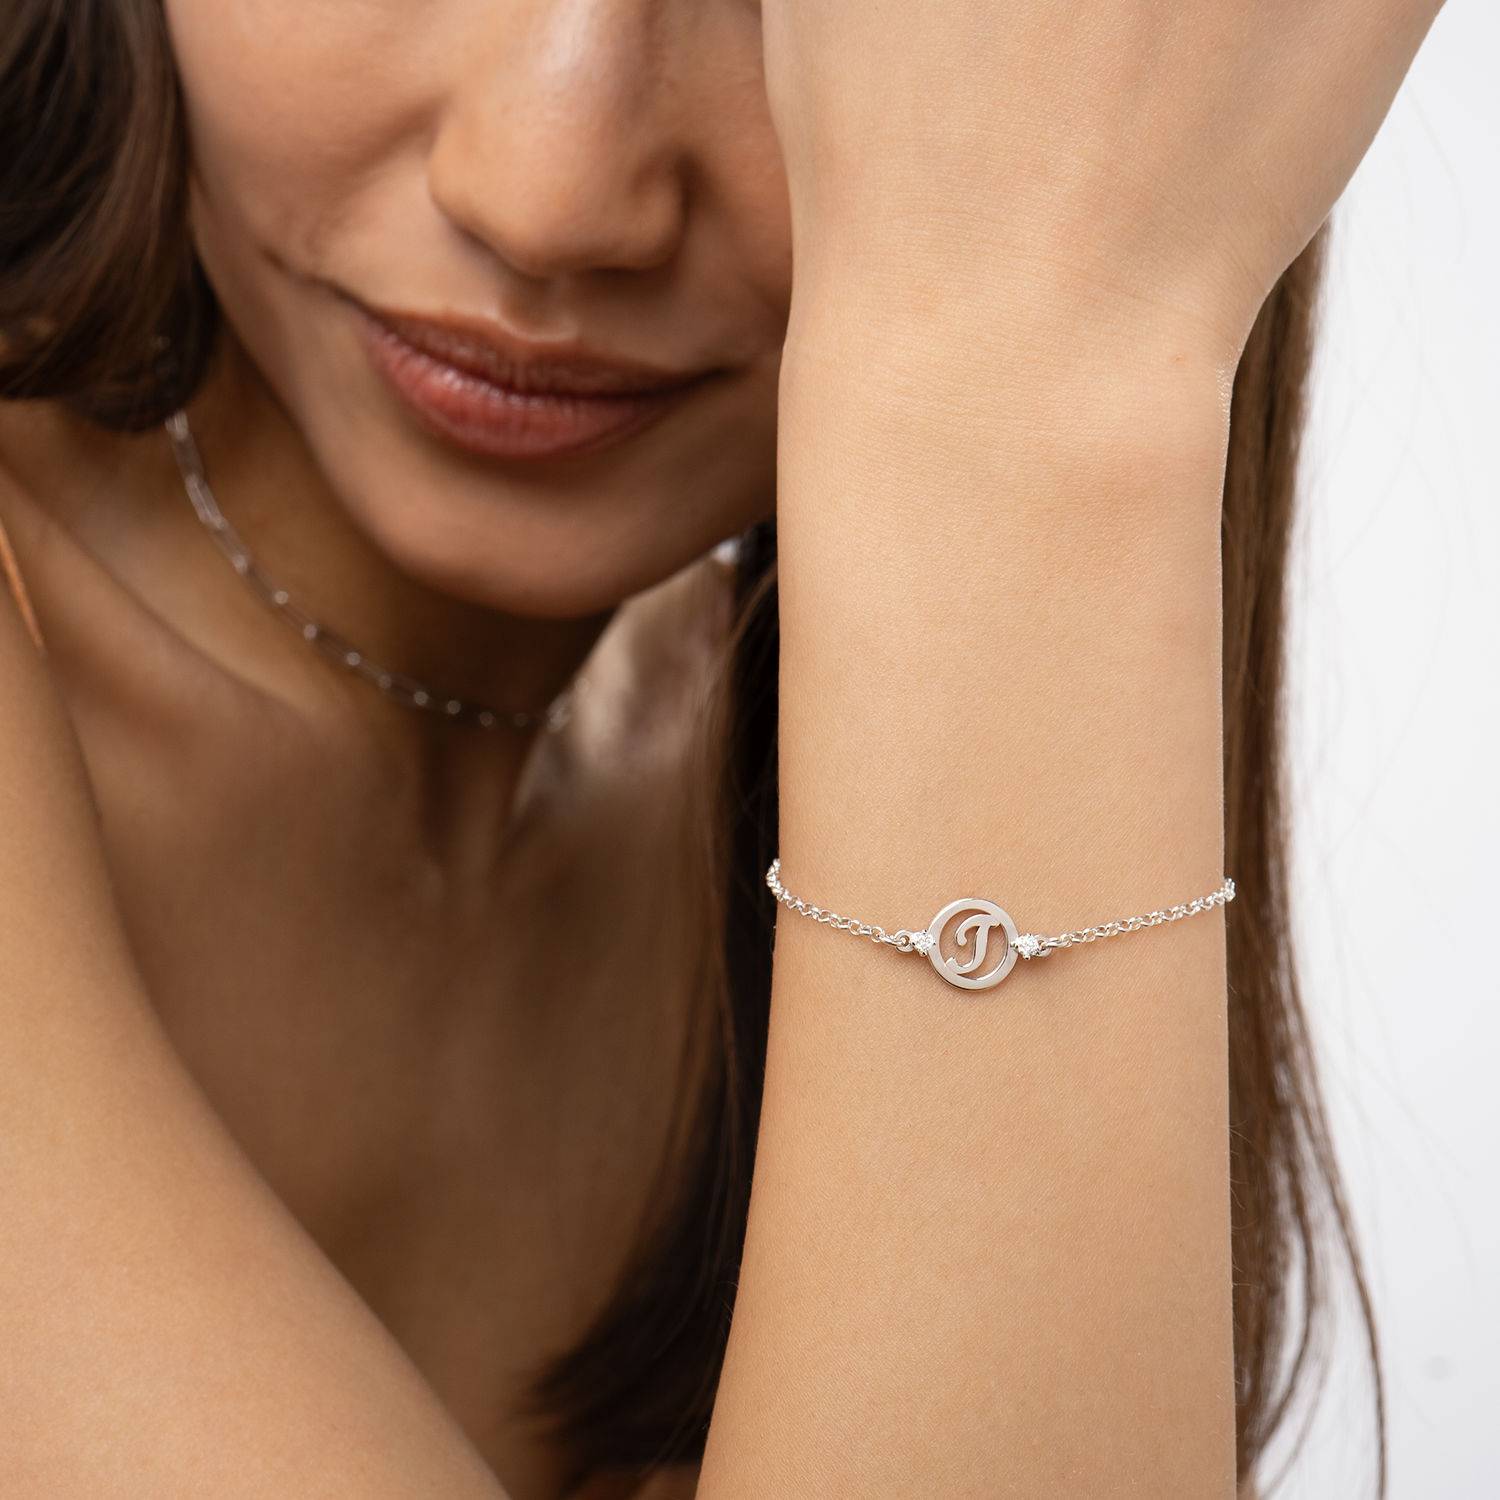 Halo armband met initialen en diamanten in sterling zilver-1 Productfoto